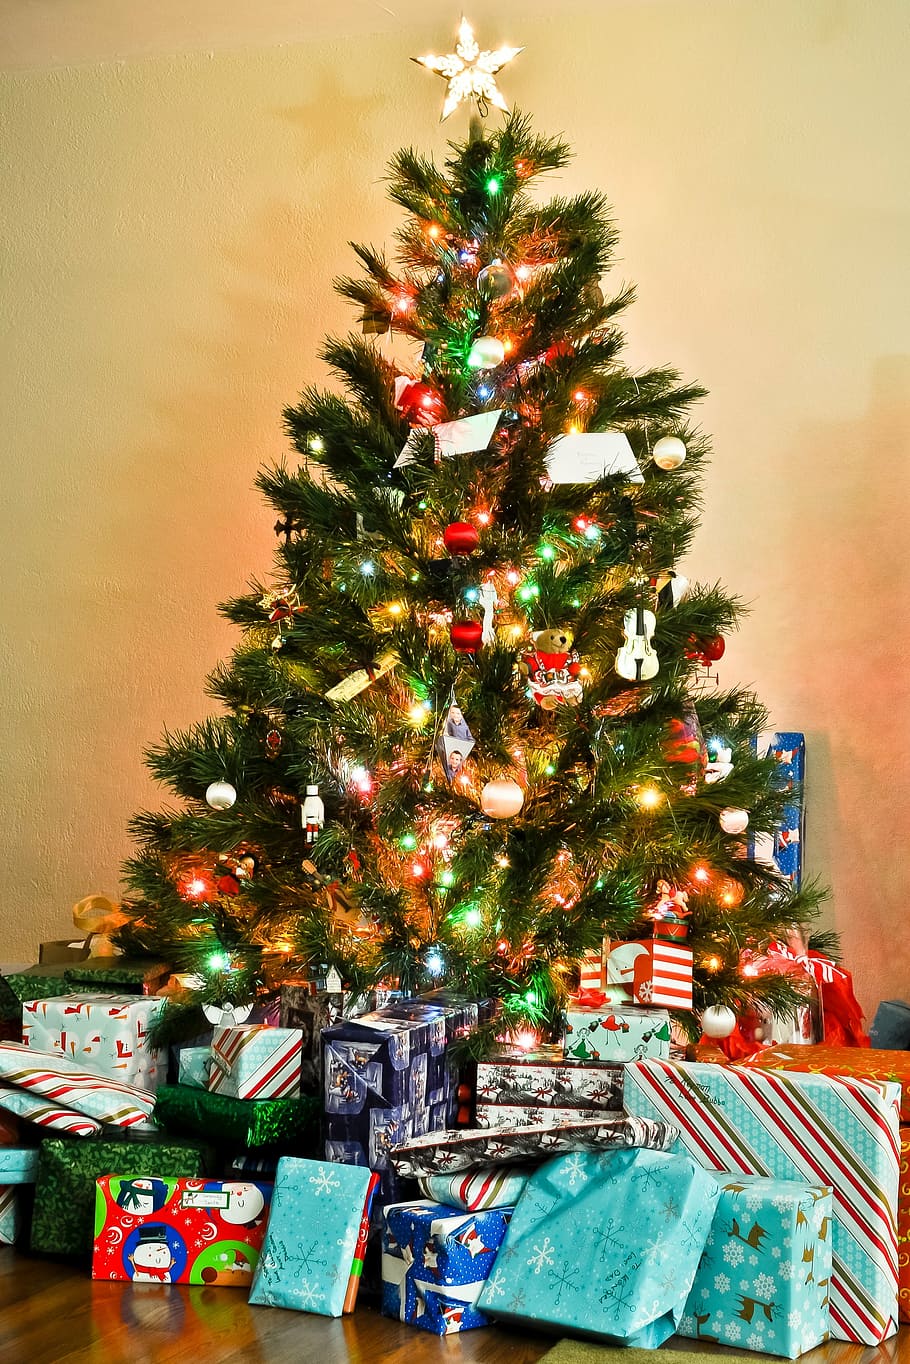 点灯, クリスマスツリー, ギフト, ツリー, クリスマス, お祝い, 文化, 伝統, クリスマスの装飾, クリスマスプレゼント